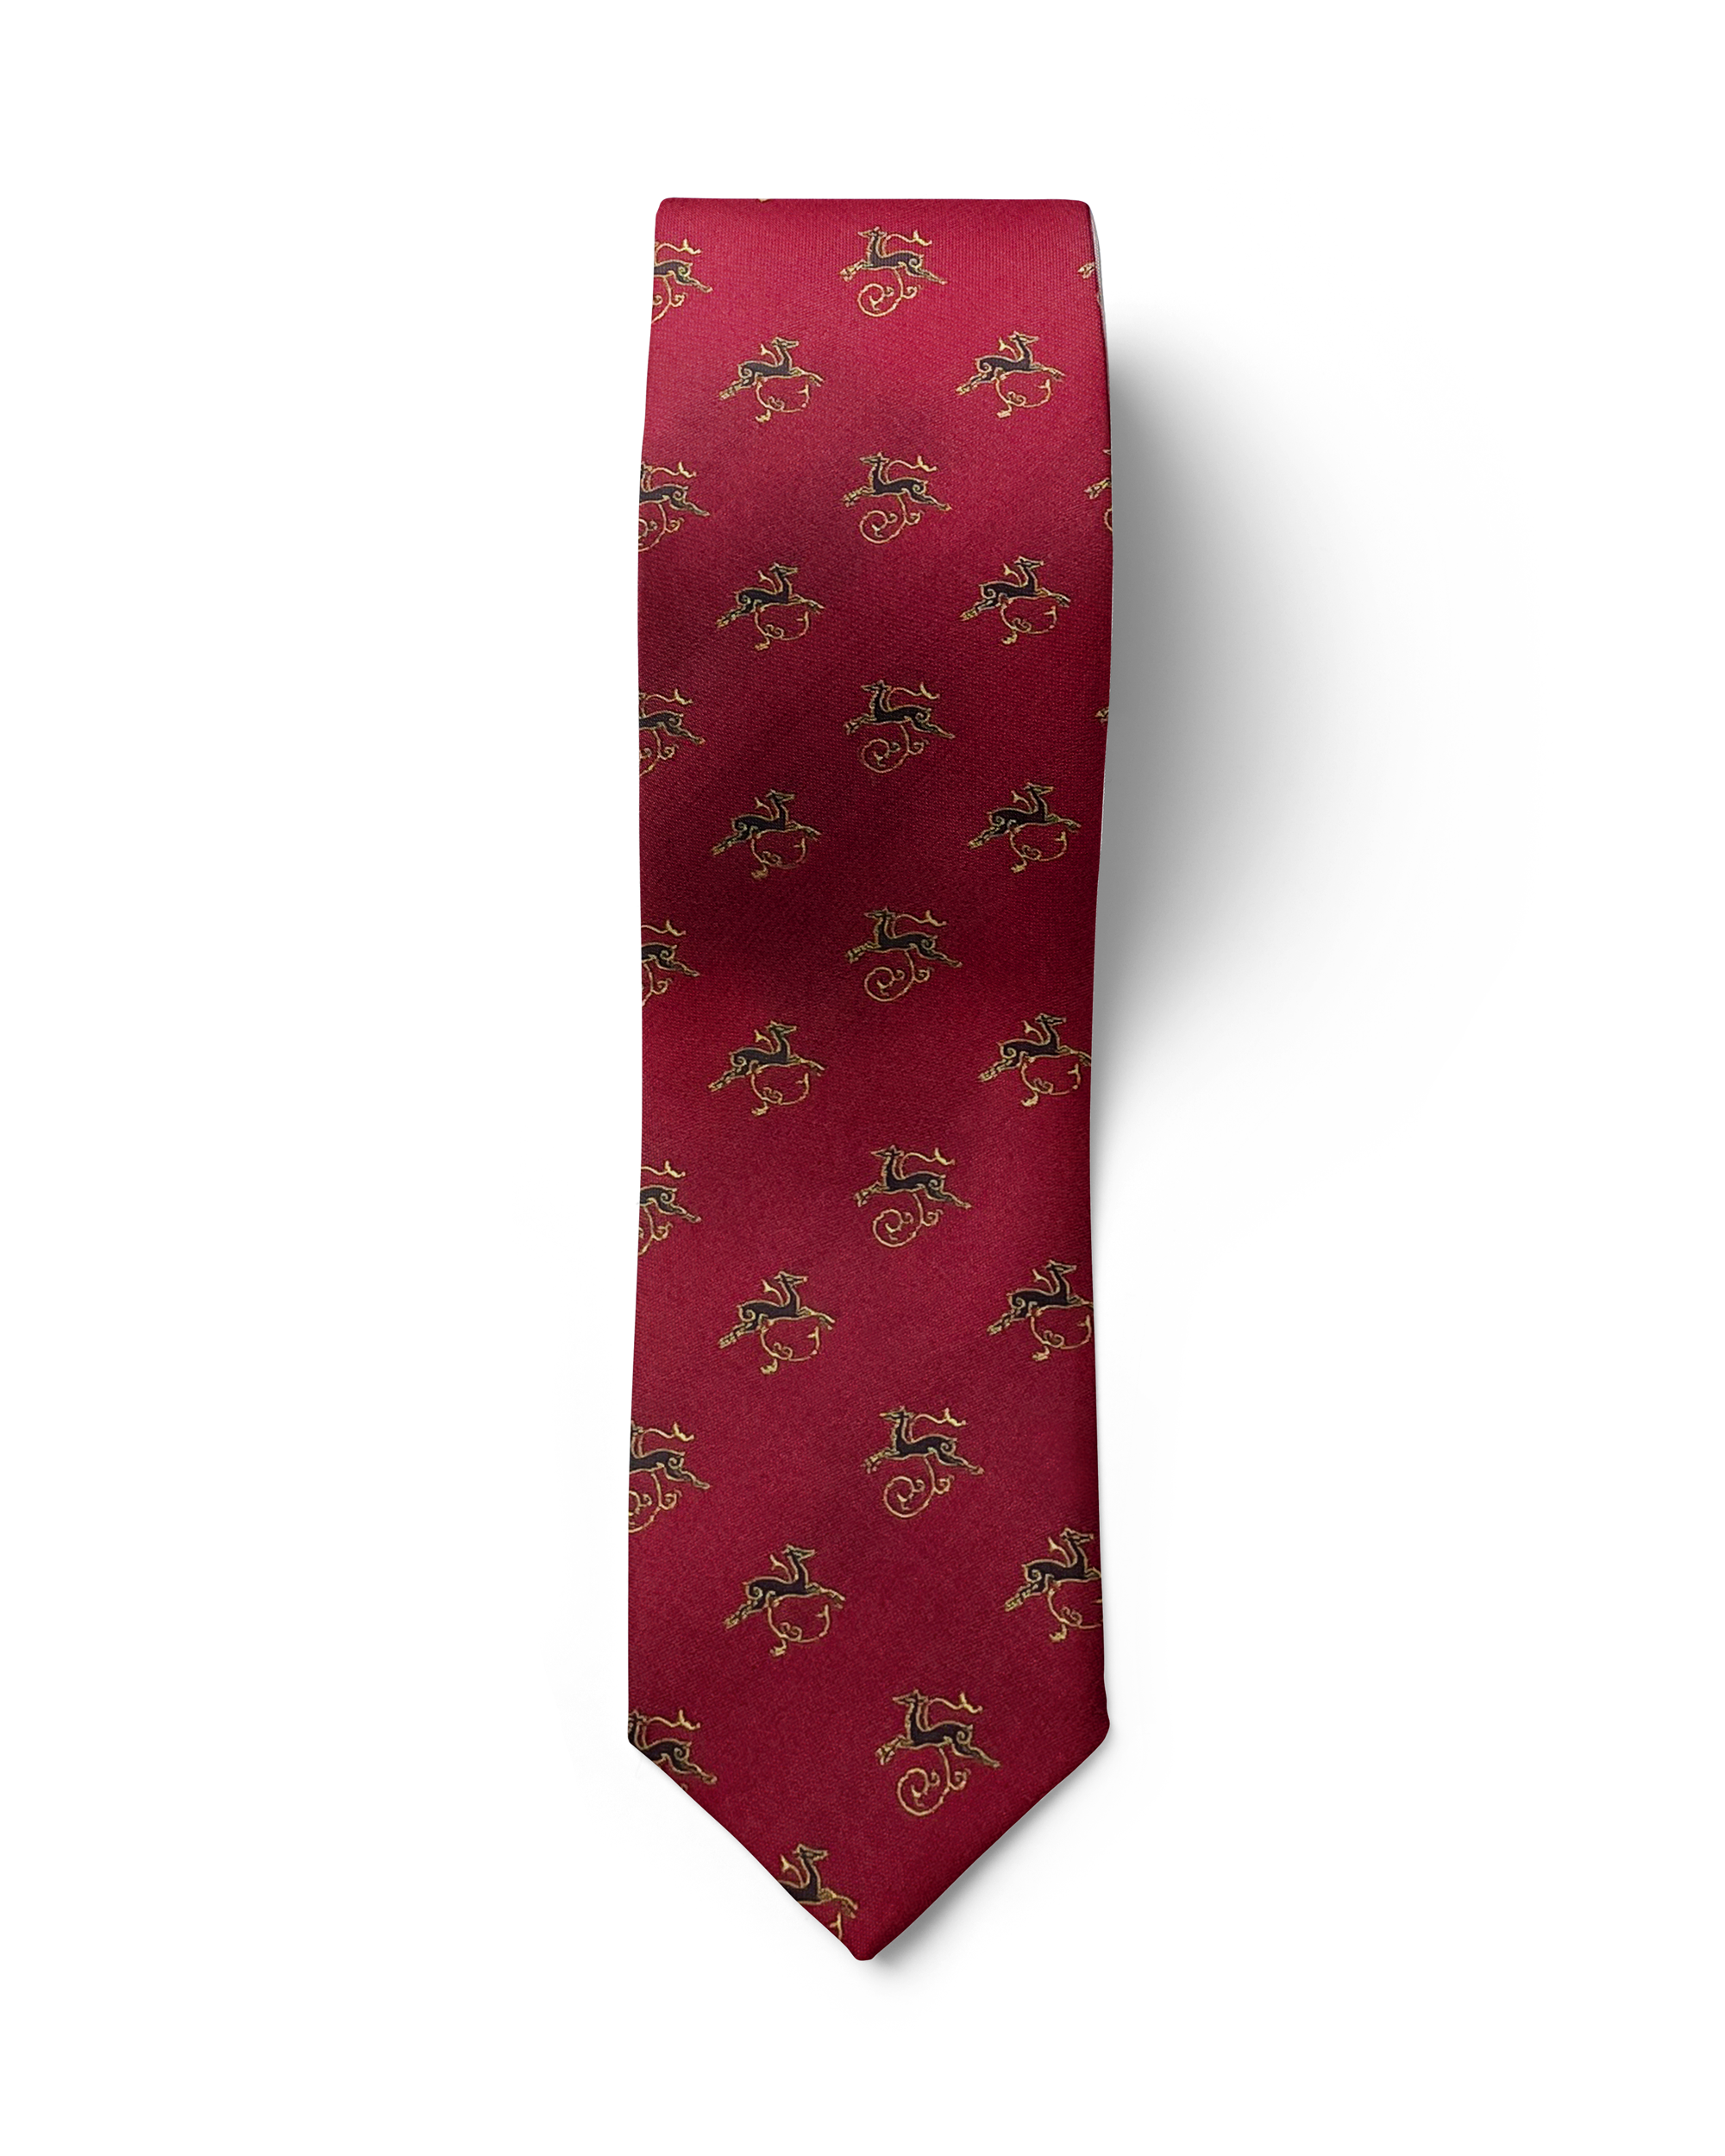 ჟაკარდის აბრეშუმის ჰალსტუხის და საგულის სეტი „ირმის ნახტომი“ (წითელი)